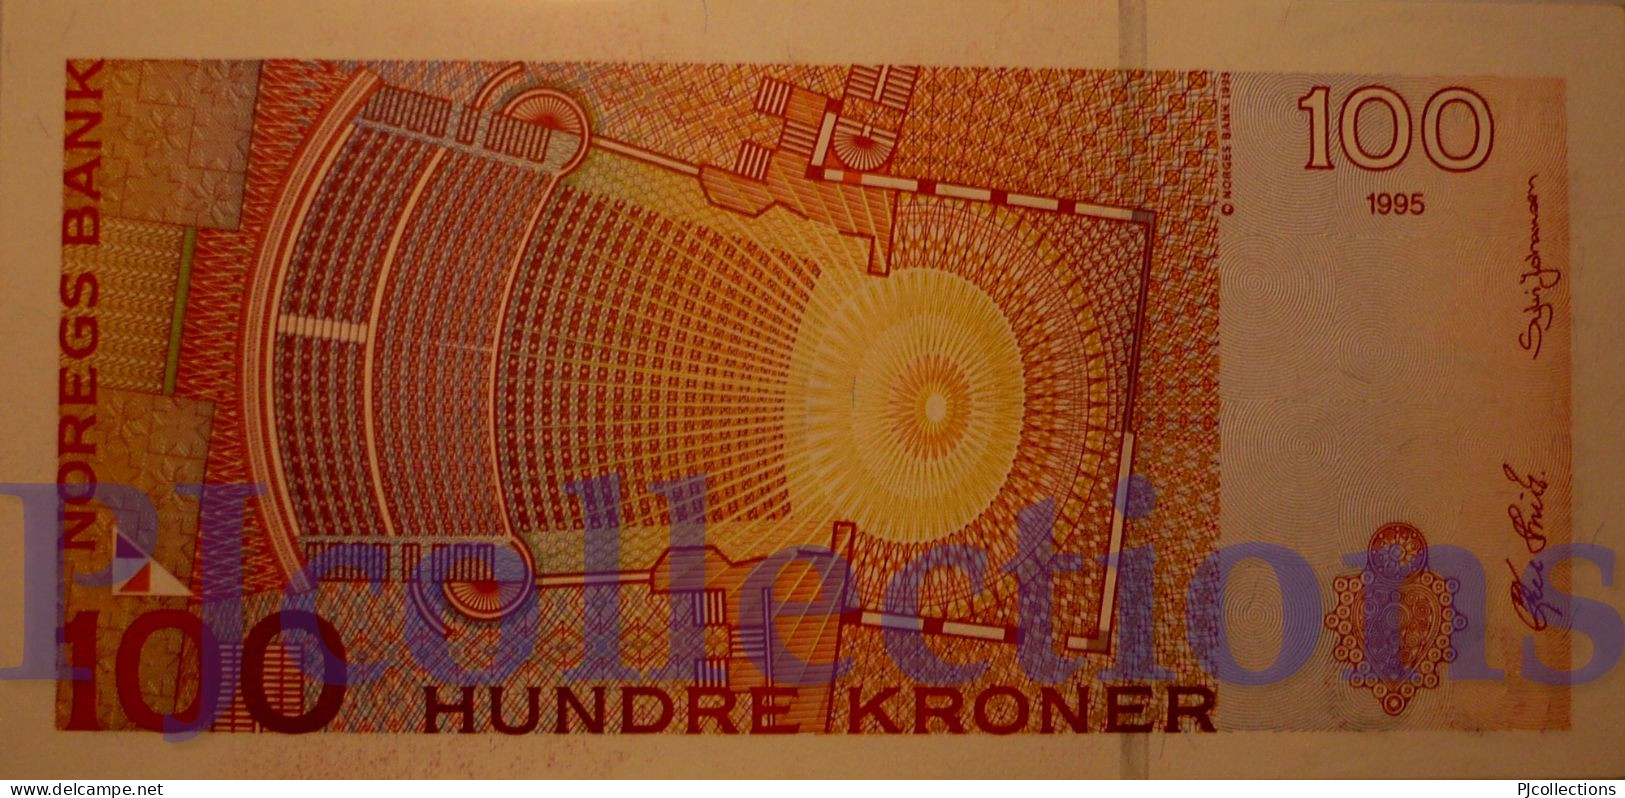 NORWAY 100 KRONER 1995 PICK 47a AU/UNC - Noruega